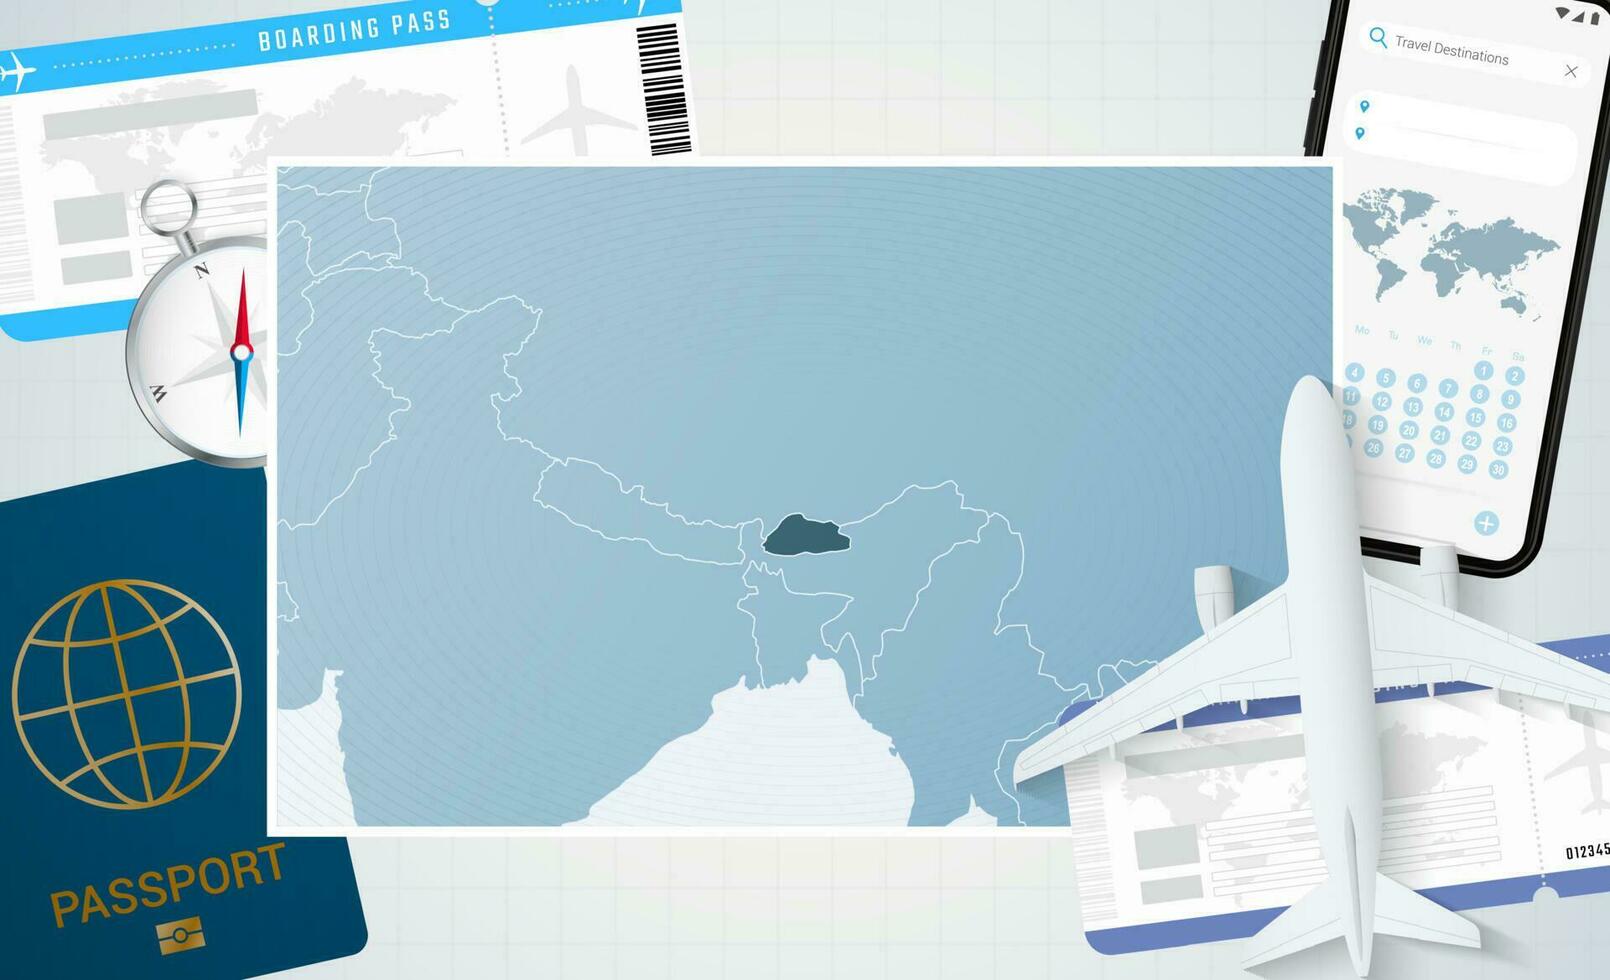 reis naar bhutan, illustratie met een kaart van bhutan. achtergrond met vliegtuig, cel telefoon, paspoort, kompas en kaartjes. vector